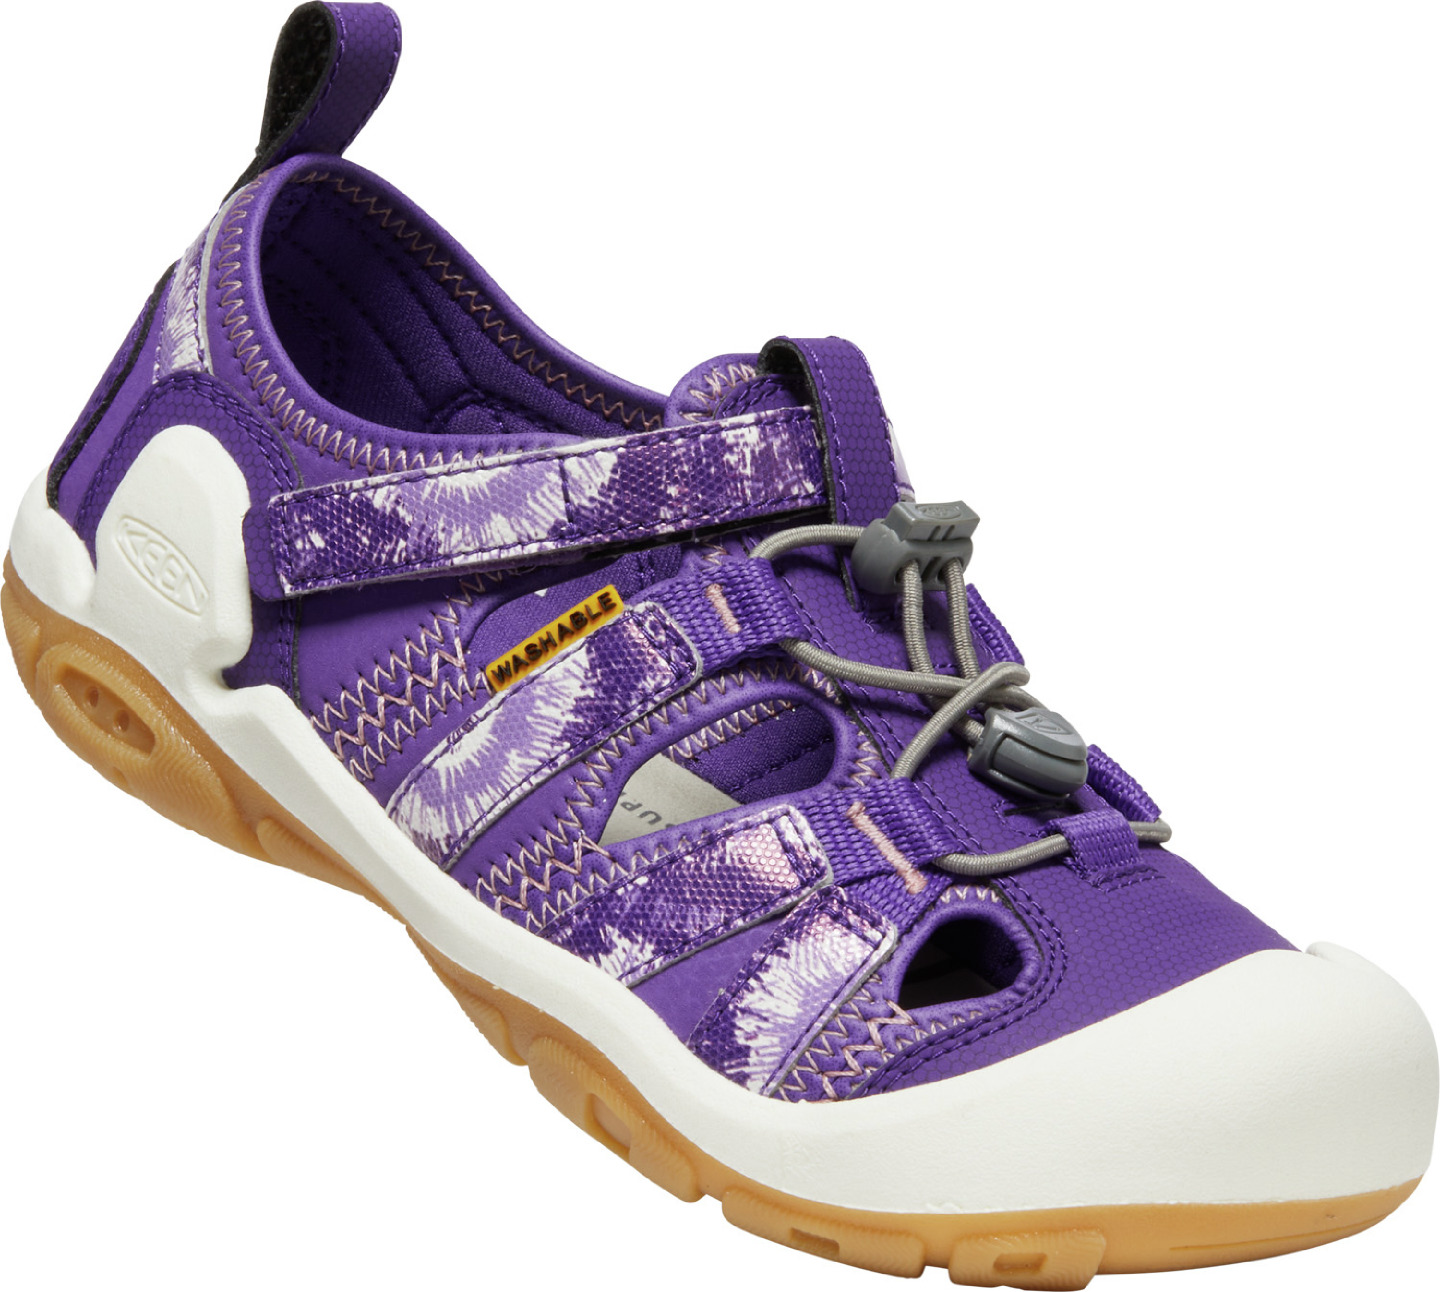 Keen KNOTCH CREEK YOUTH tillandsia purple/englsh lvndr Velikost: 34 dětské sandály